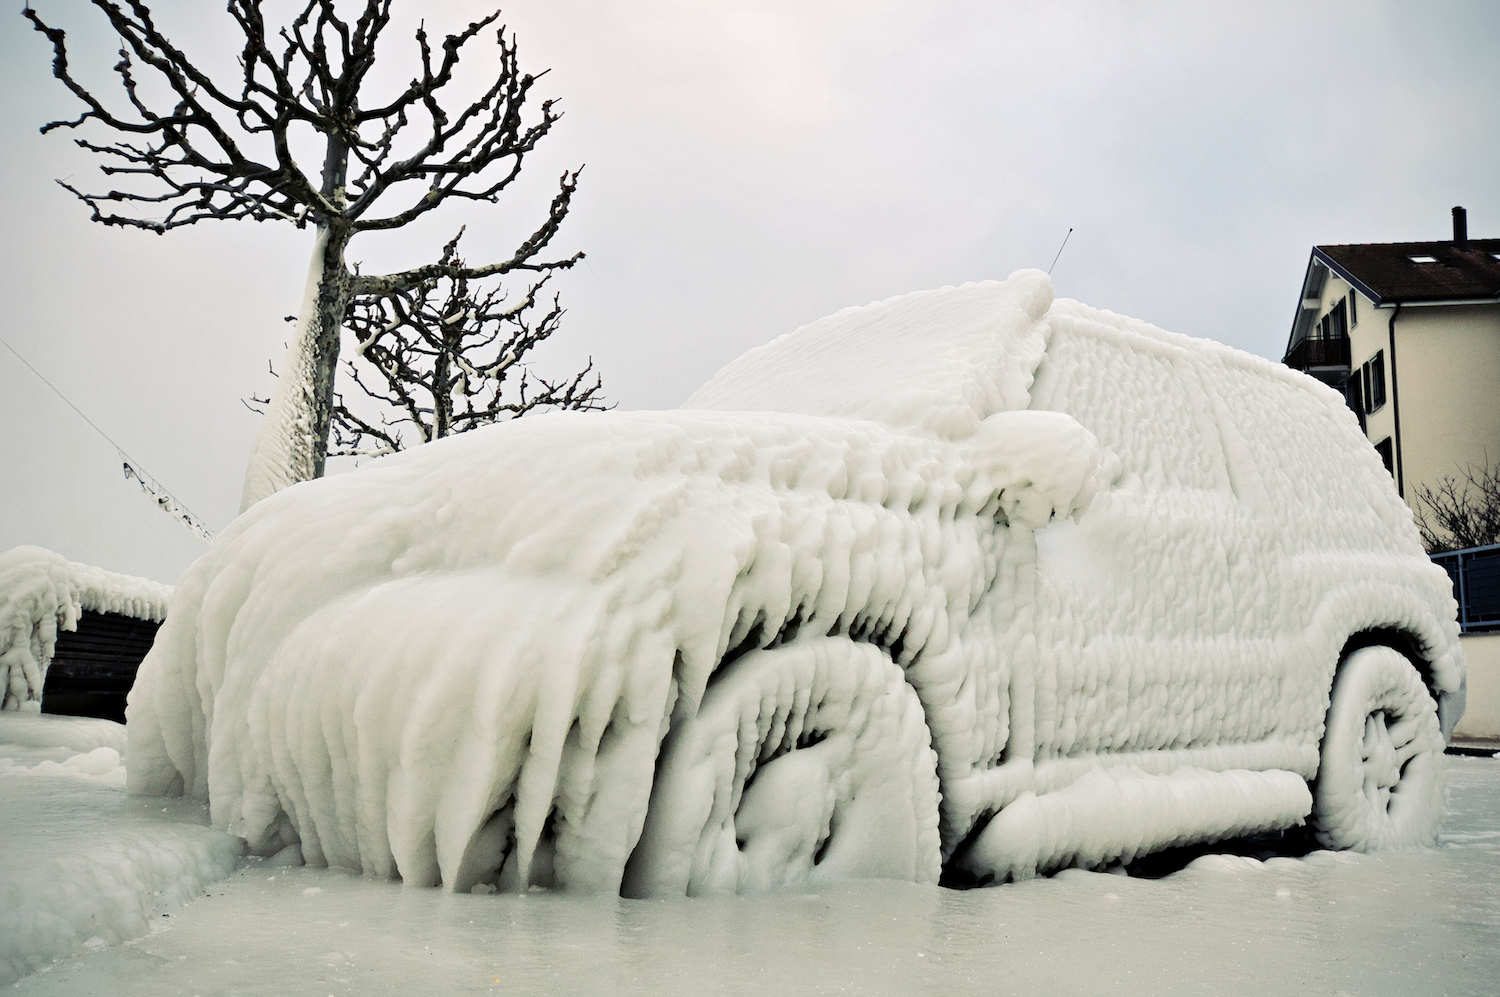 Можно мыть машину в морозы. Обледеневшая машина на мойки. Мойка автомобиля зимой. Автомобиль на мойке в Мороз. Обледеневшие машины на зимних улицах.